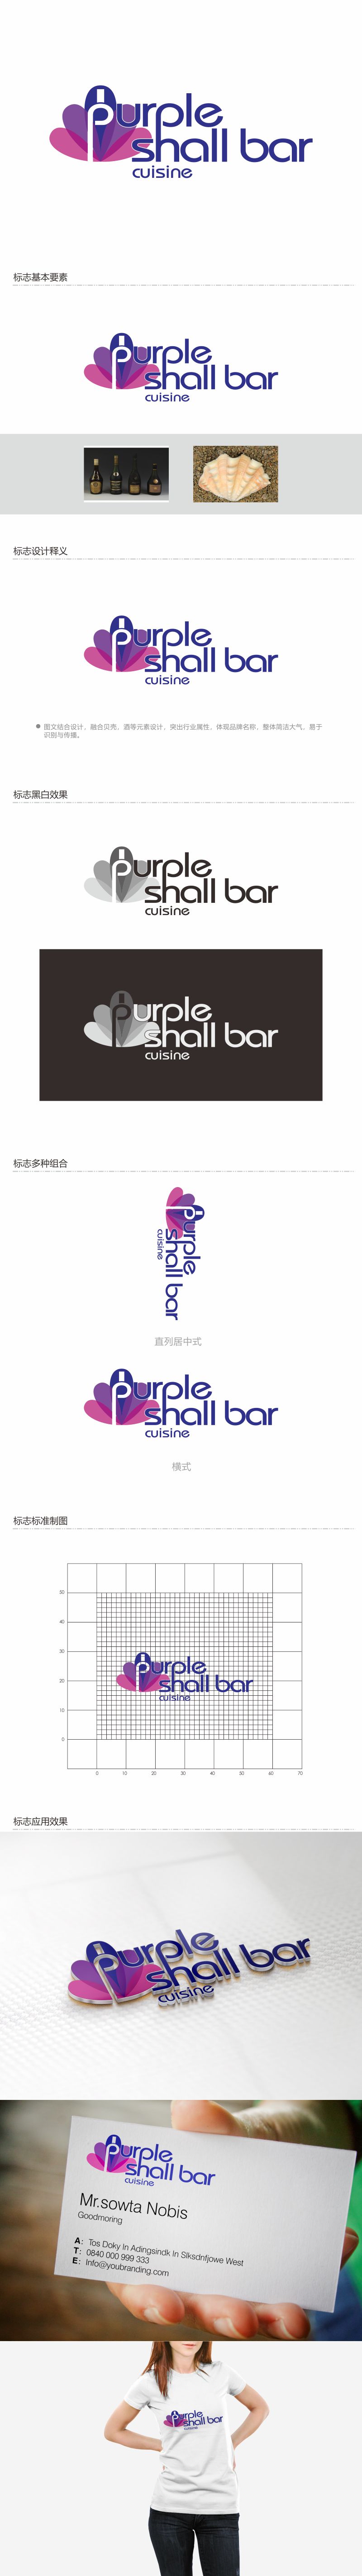 何嘉健的紫贝壳酒吧/餐饮Purple shall bar/cuisinelogo设计